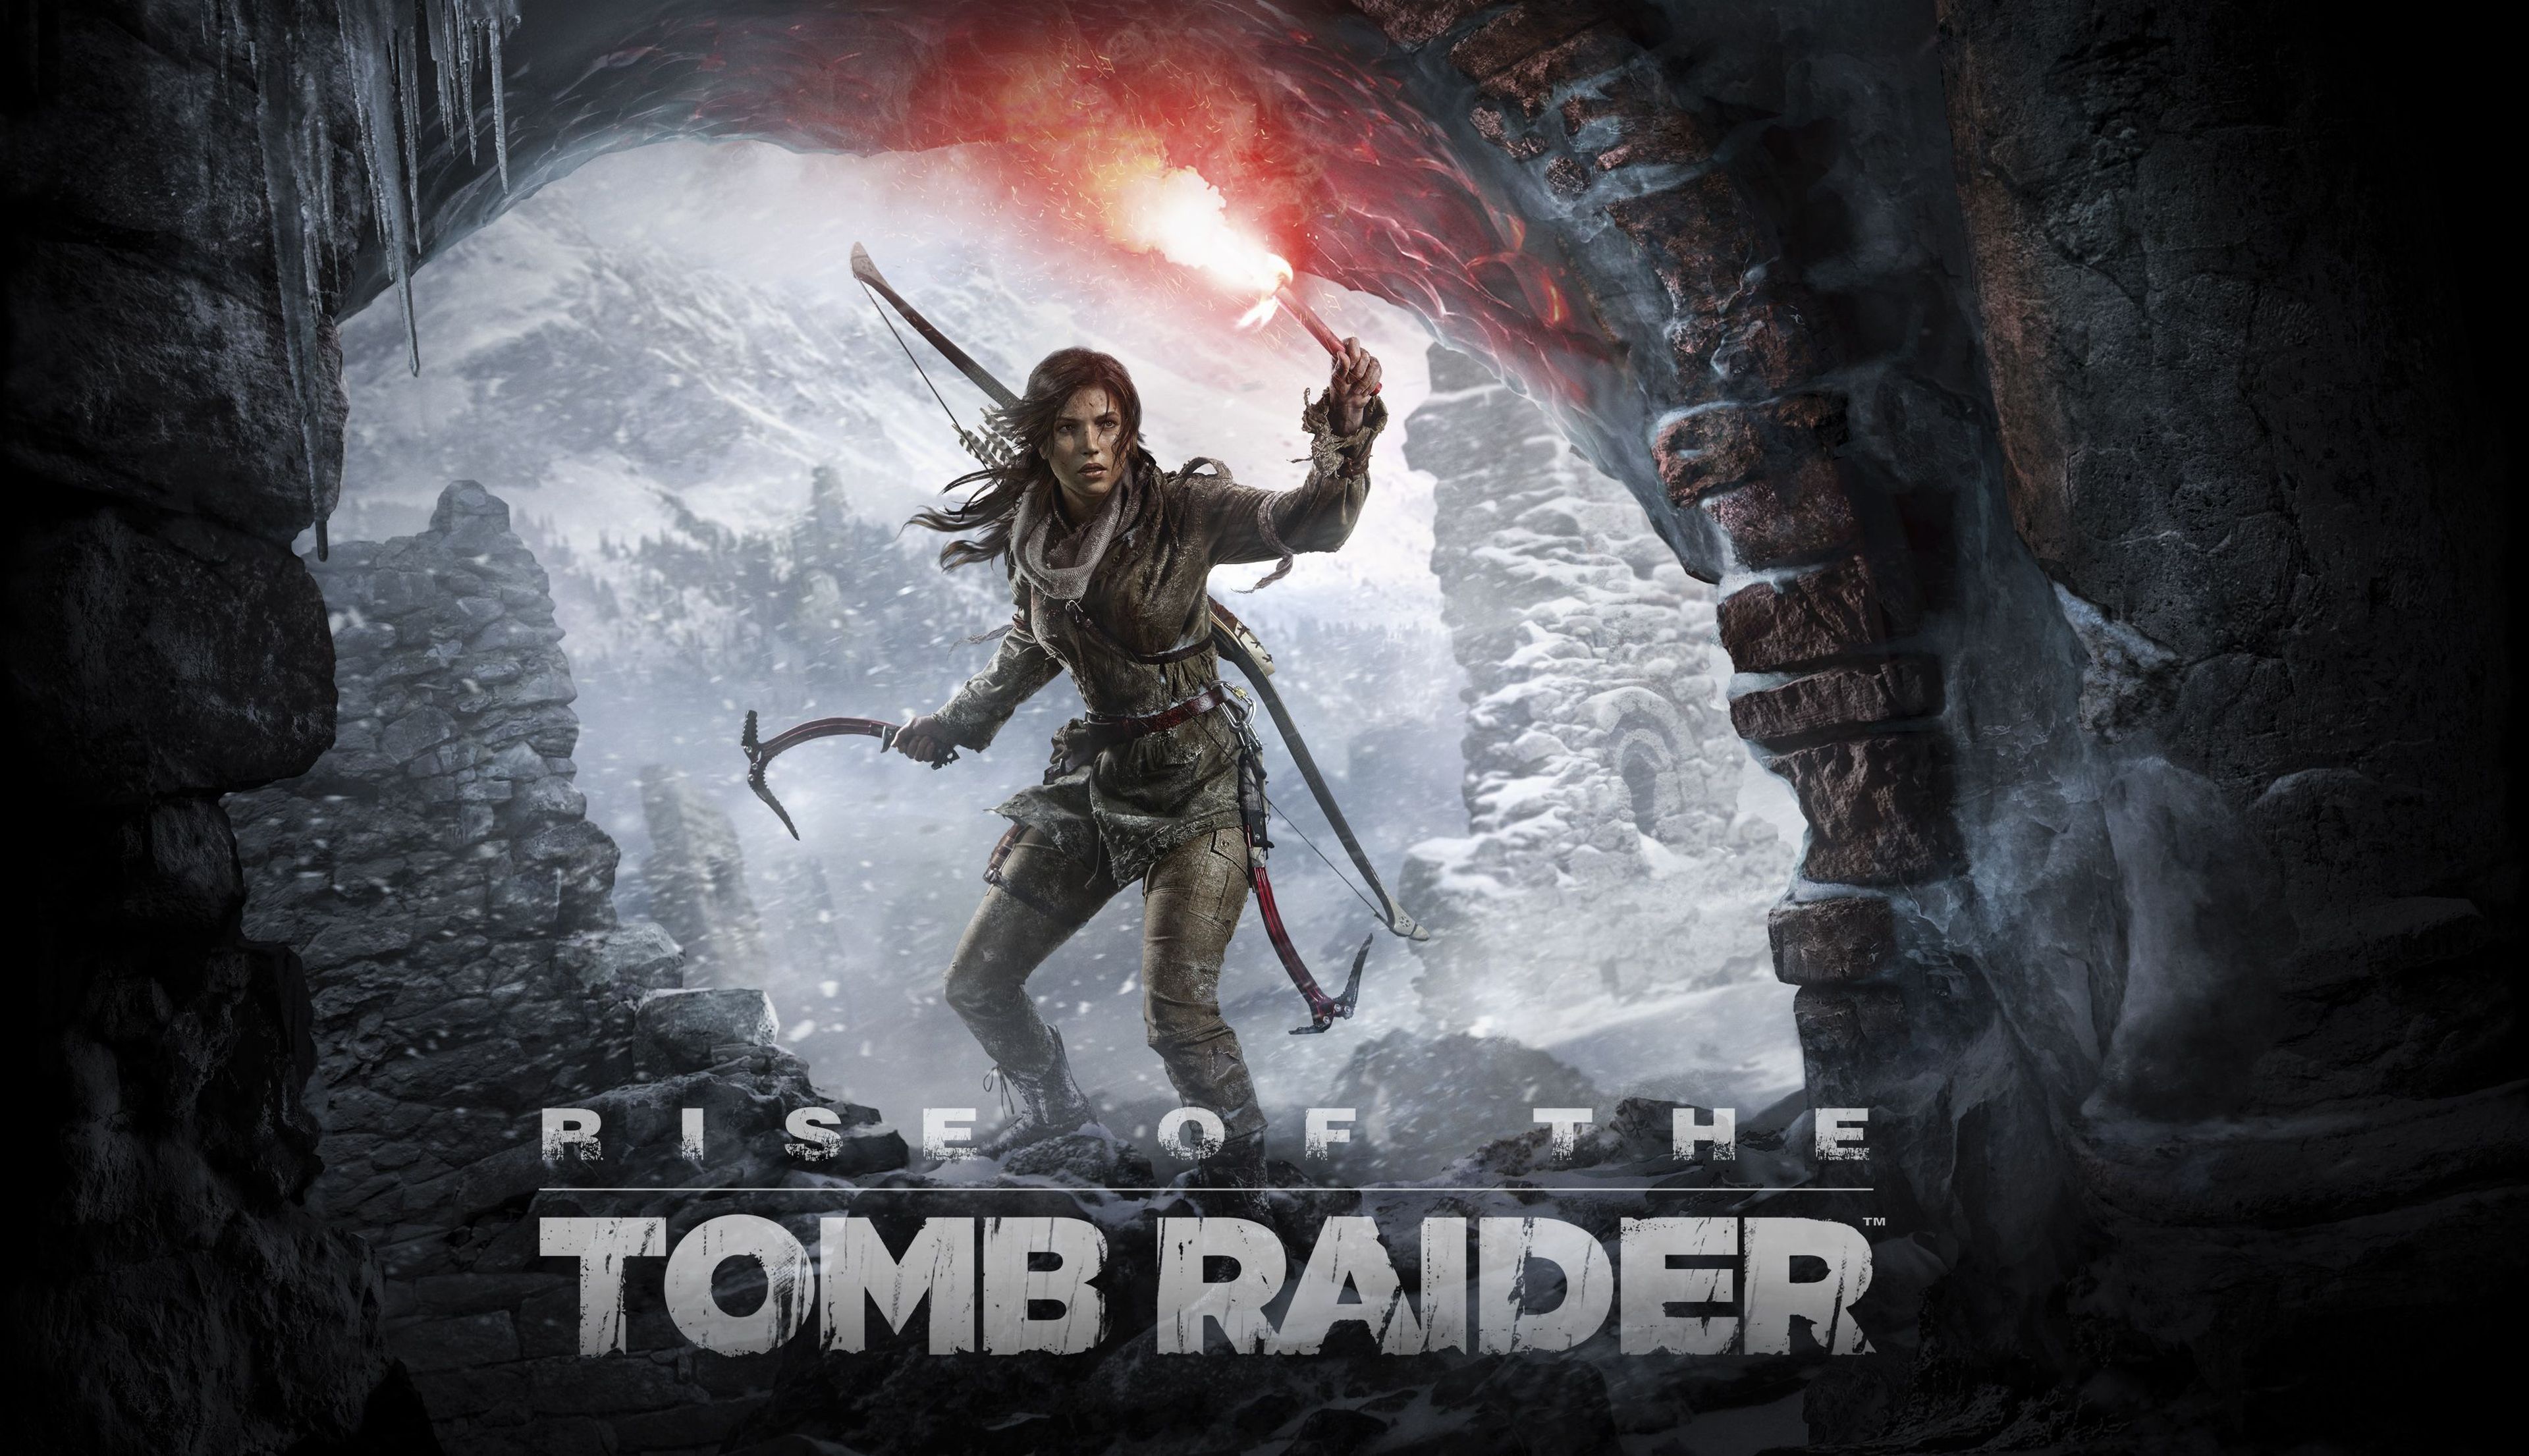 Los mejores fondos de pantalla de videojuegos para Android: Rise of the Tomb Raider